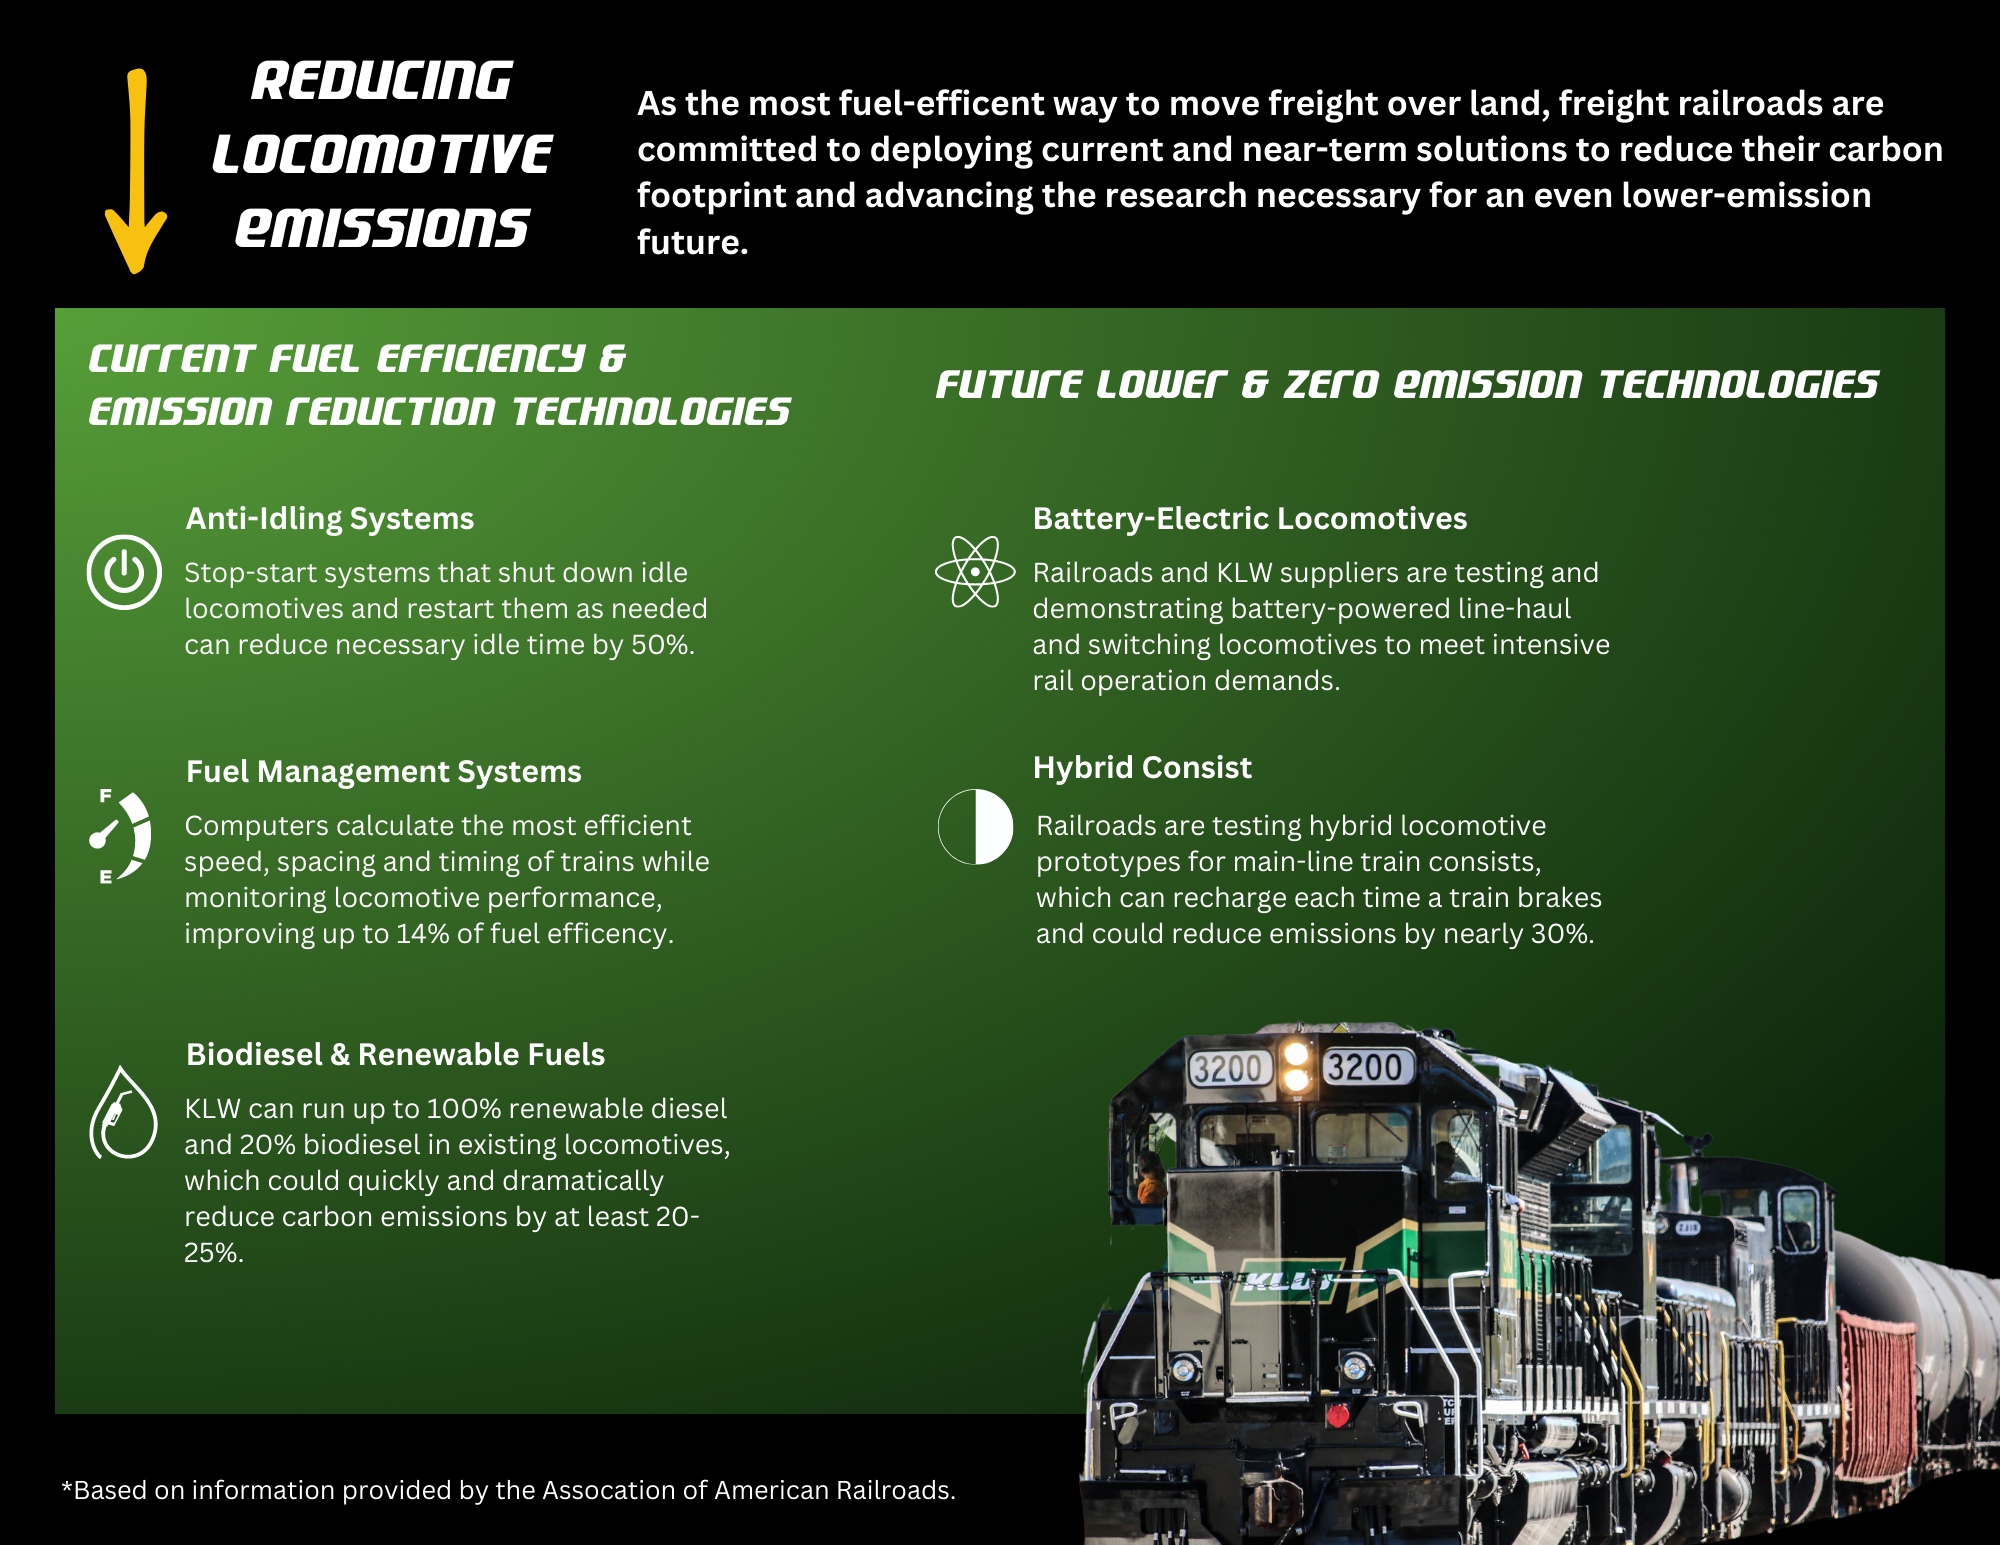 Reducing Locomotive Emissions